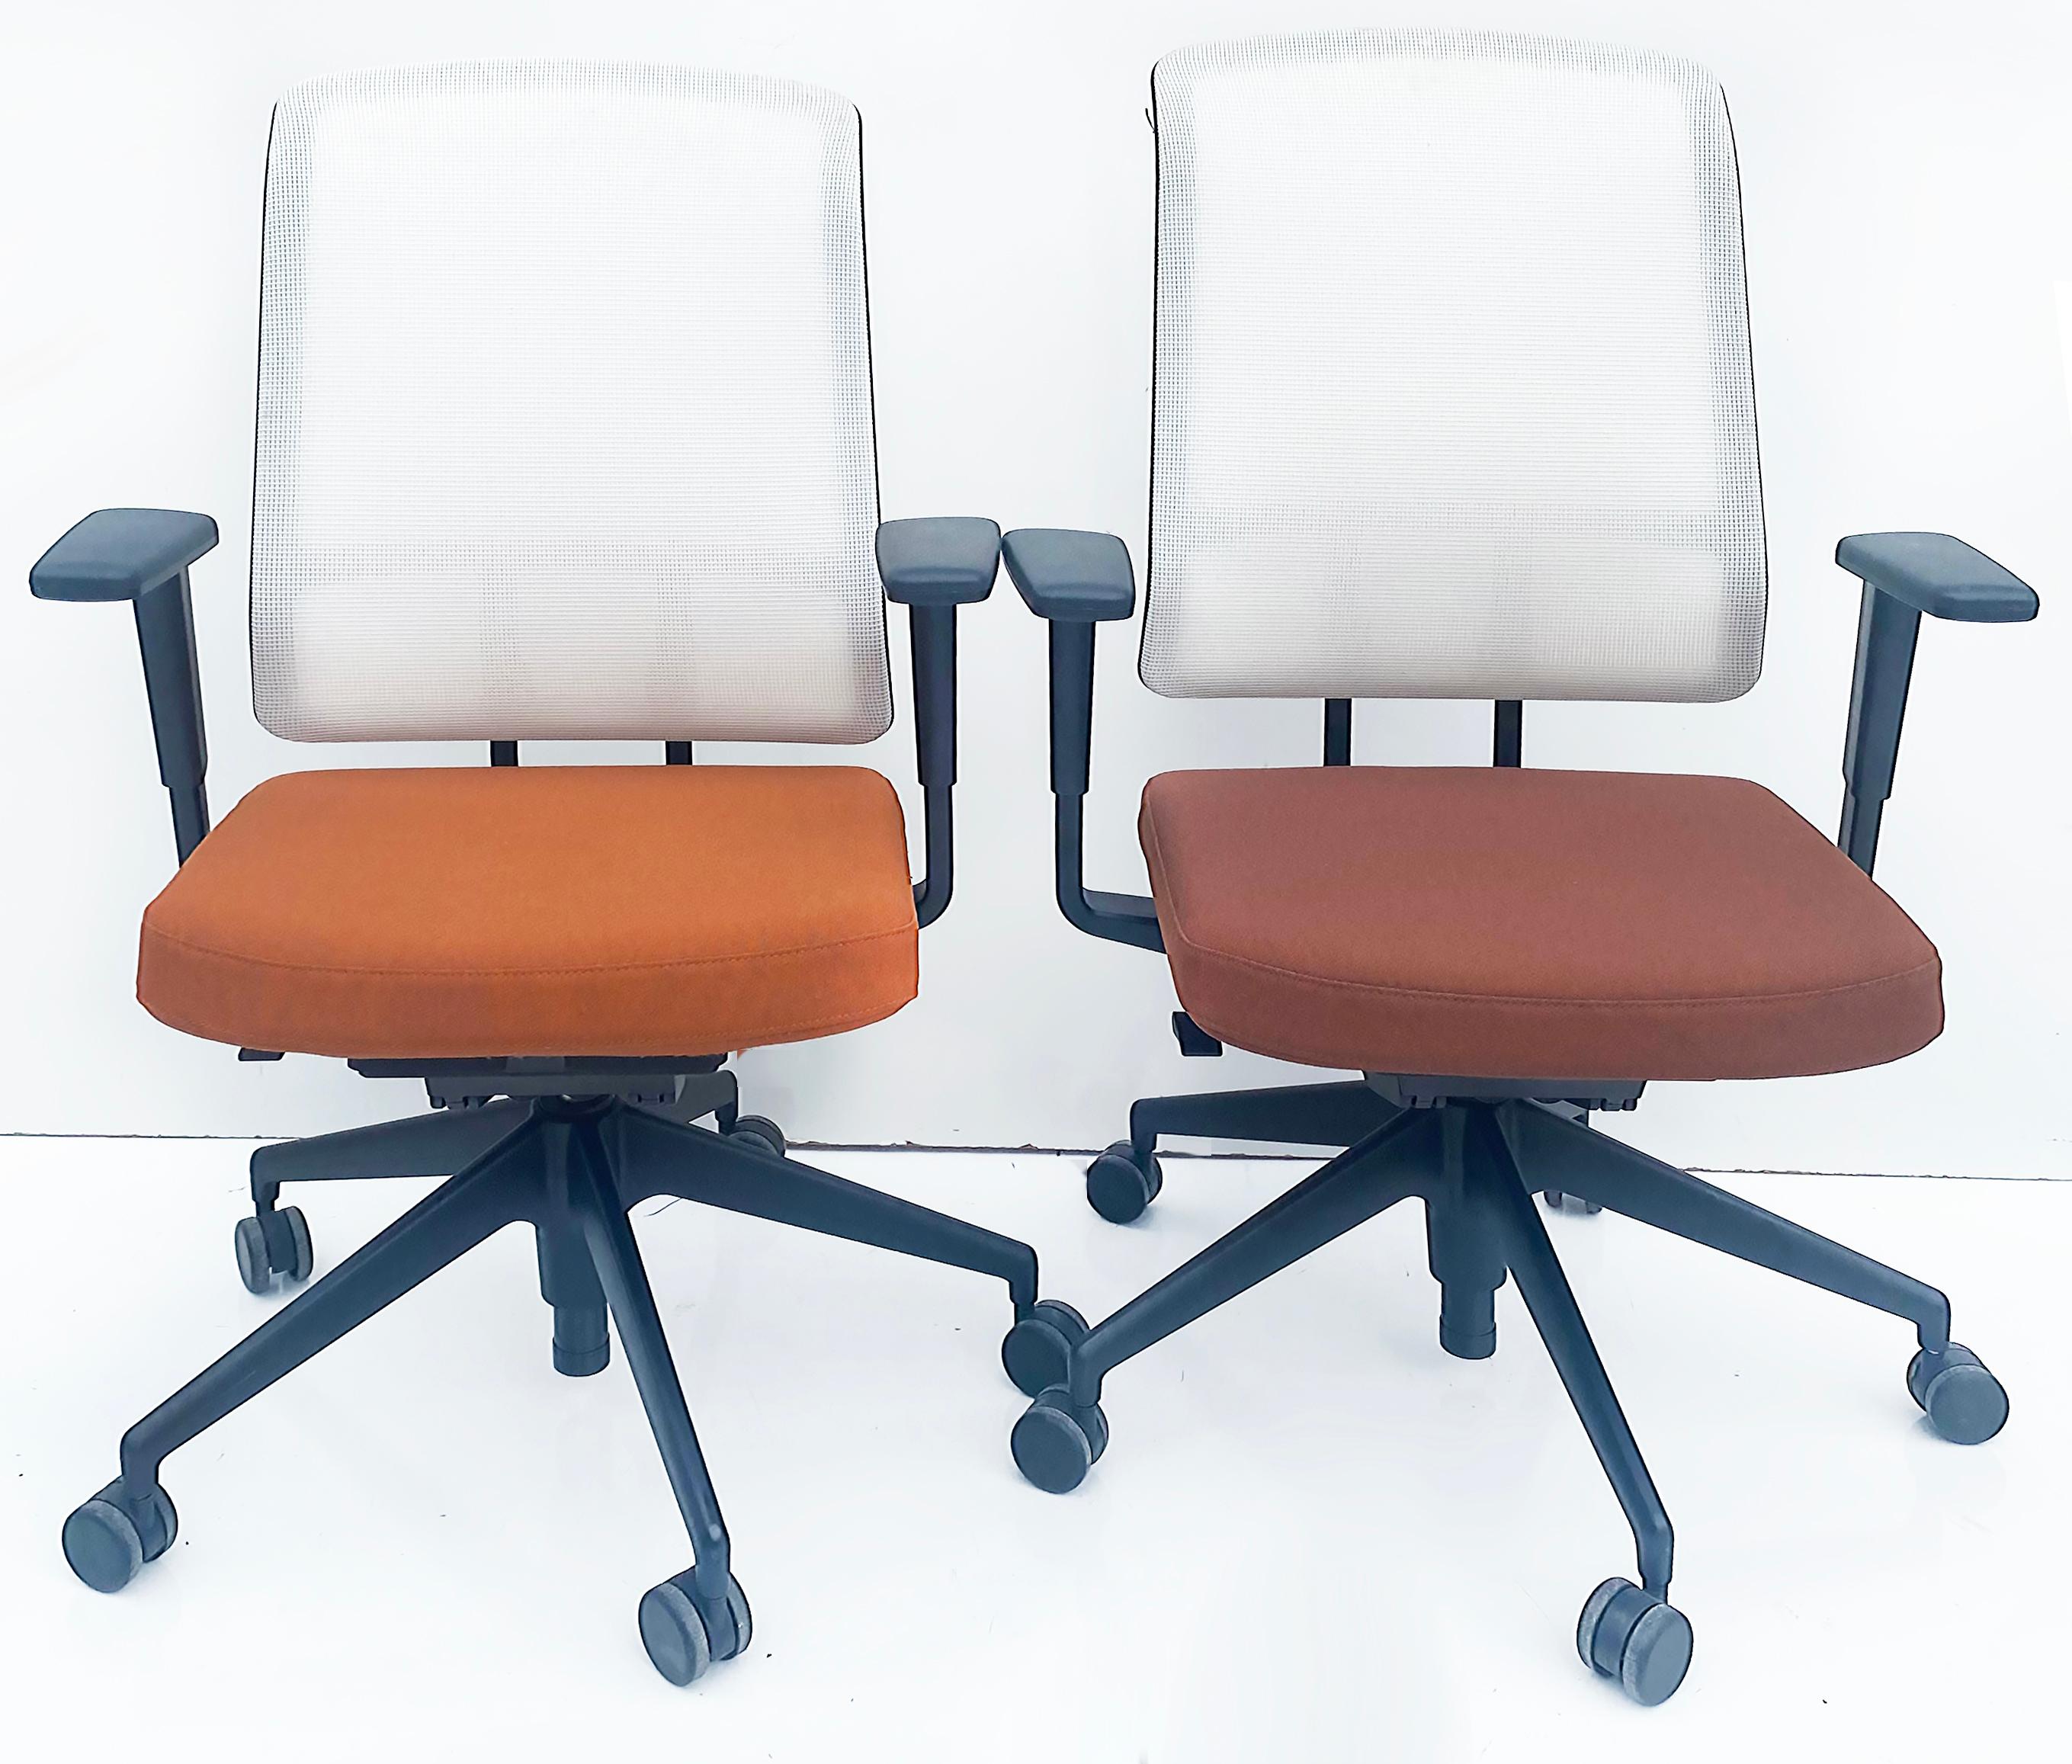 Chaises de bureau ergonomiques entièrement réglables Vitra AM d'Alberto Meda 2021

Six chaises de bureau ergonomiques Vitra AM, entièrement réglables, conçues par Alberto Meda et fabriquées par Vitra en Allemagne, sont proposées à la vente à